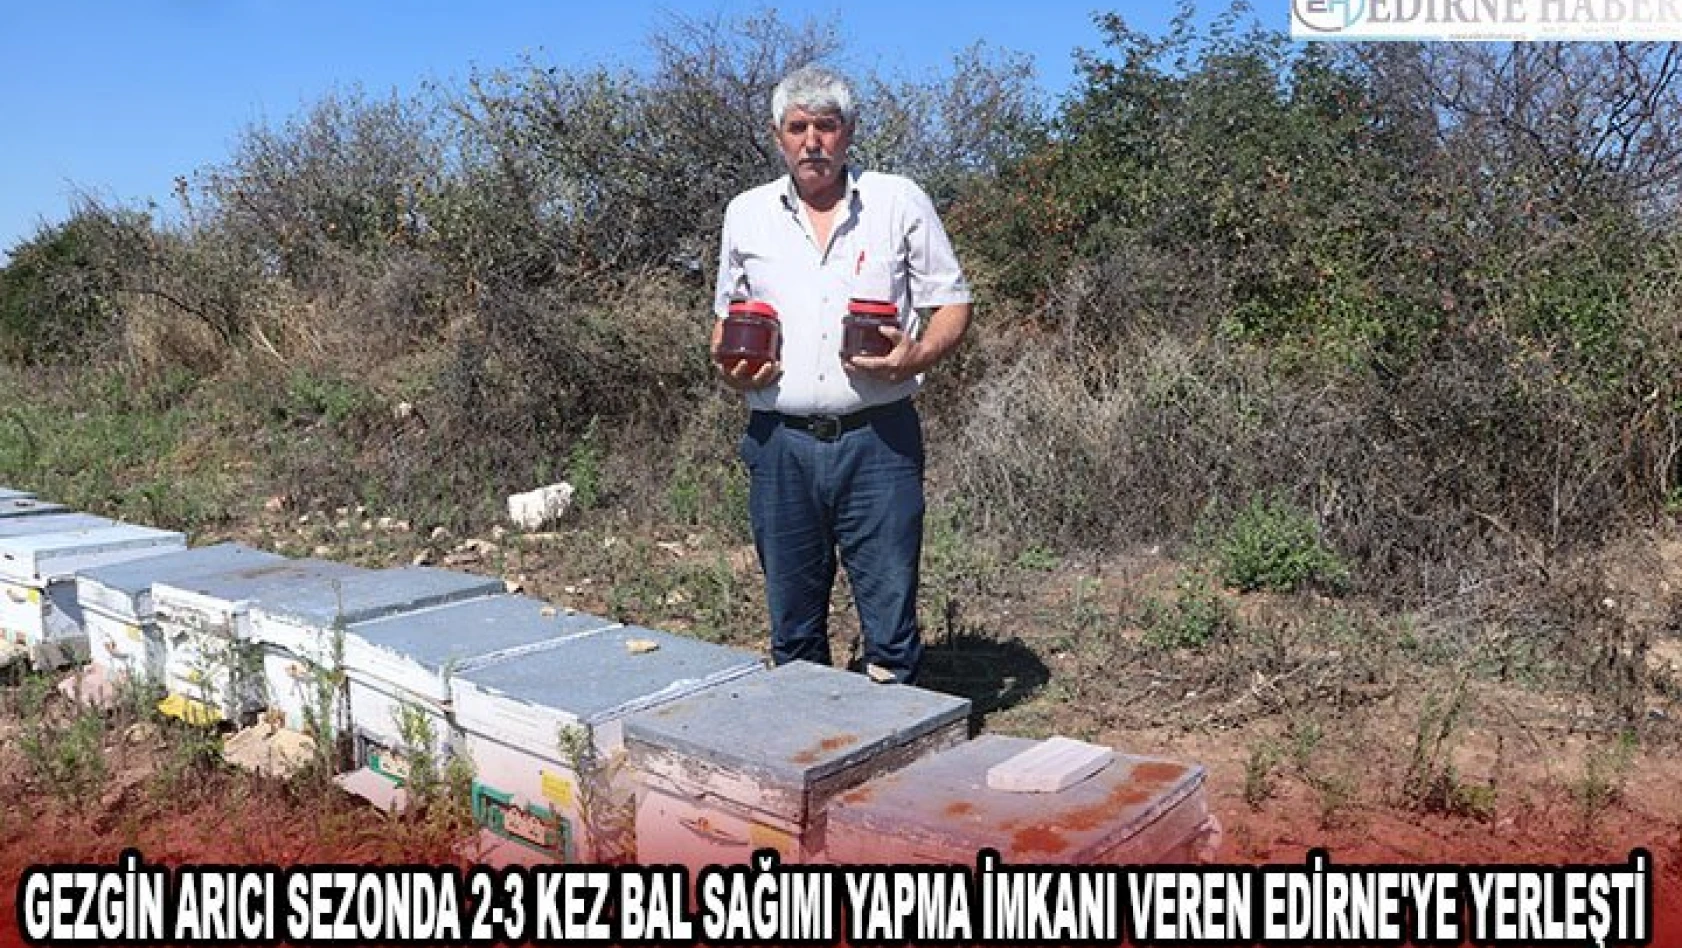 Gezgin arıcı sezonda 2-3 kez bal sağımı yapma imkanı veren Edirne'ye yerleşti